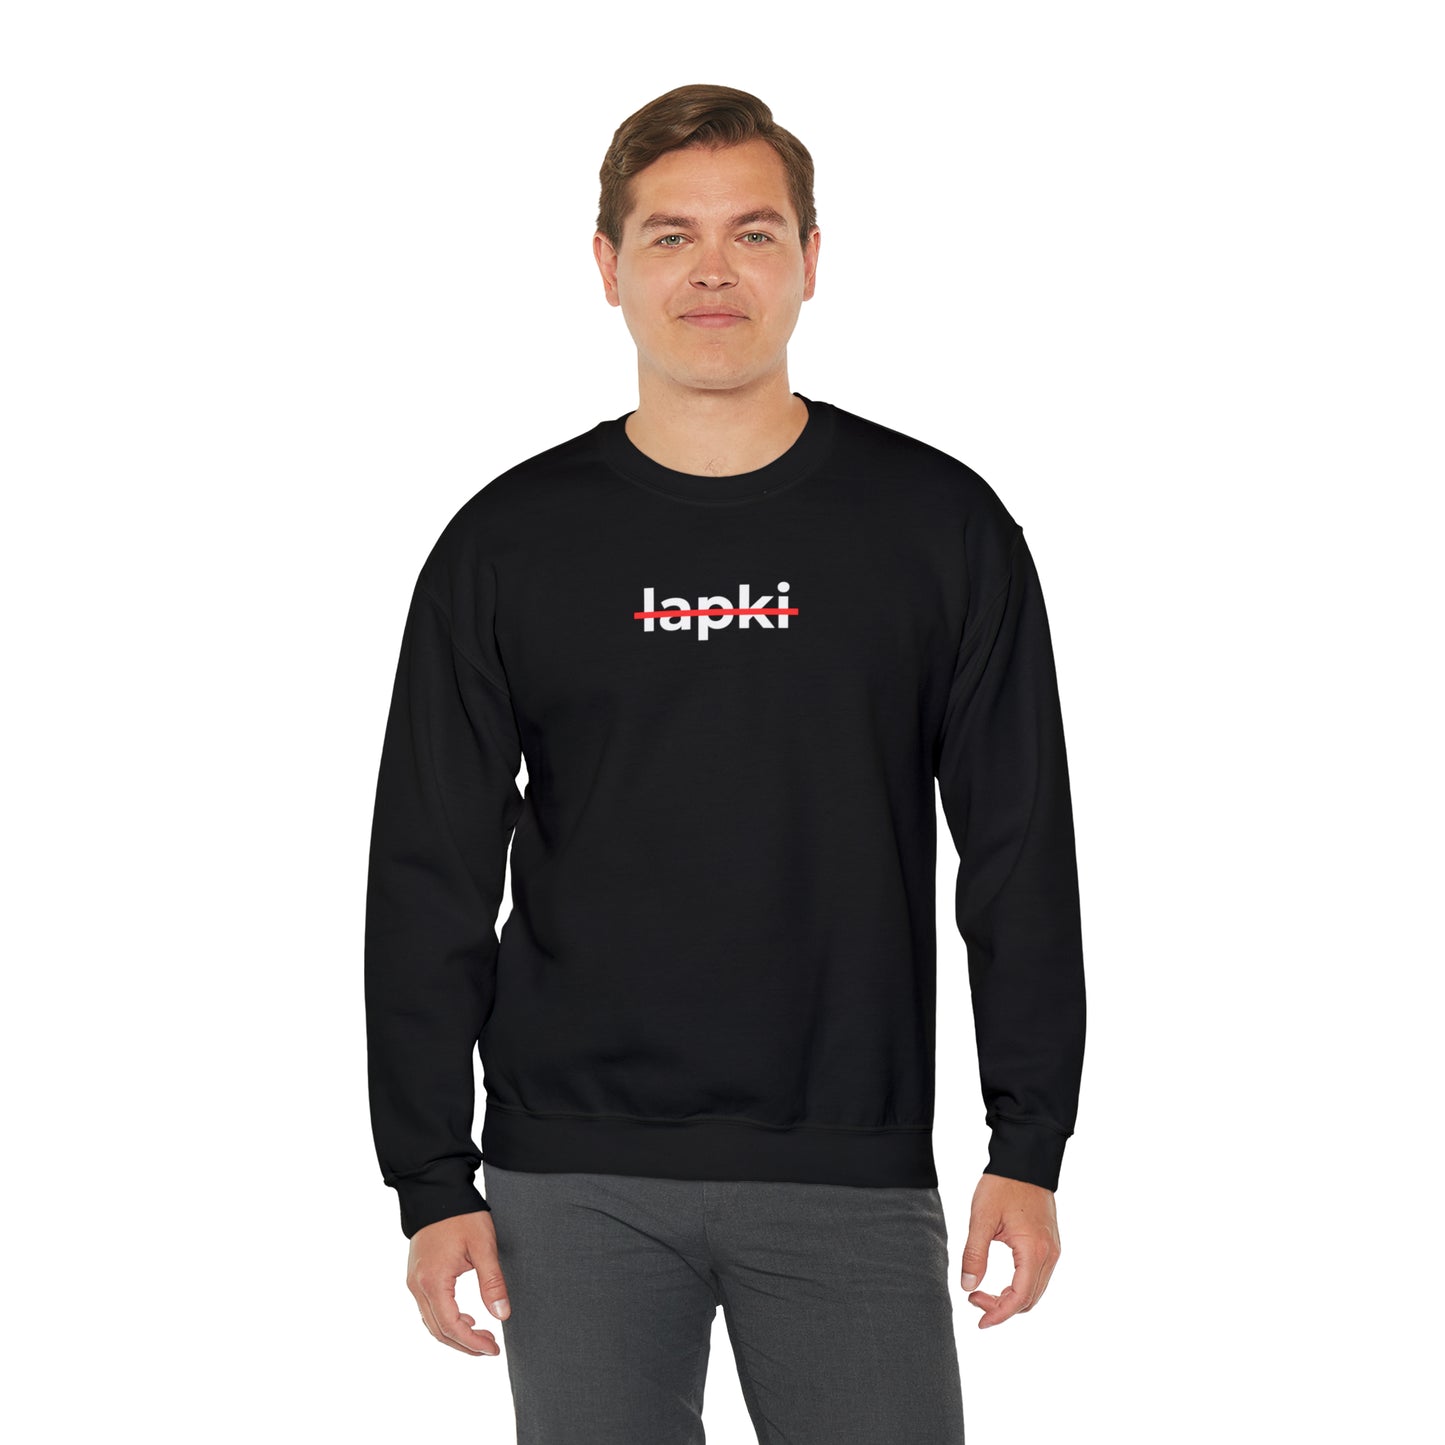 Loose-Fit Unisex Sweatshirt "Lapki"